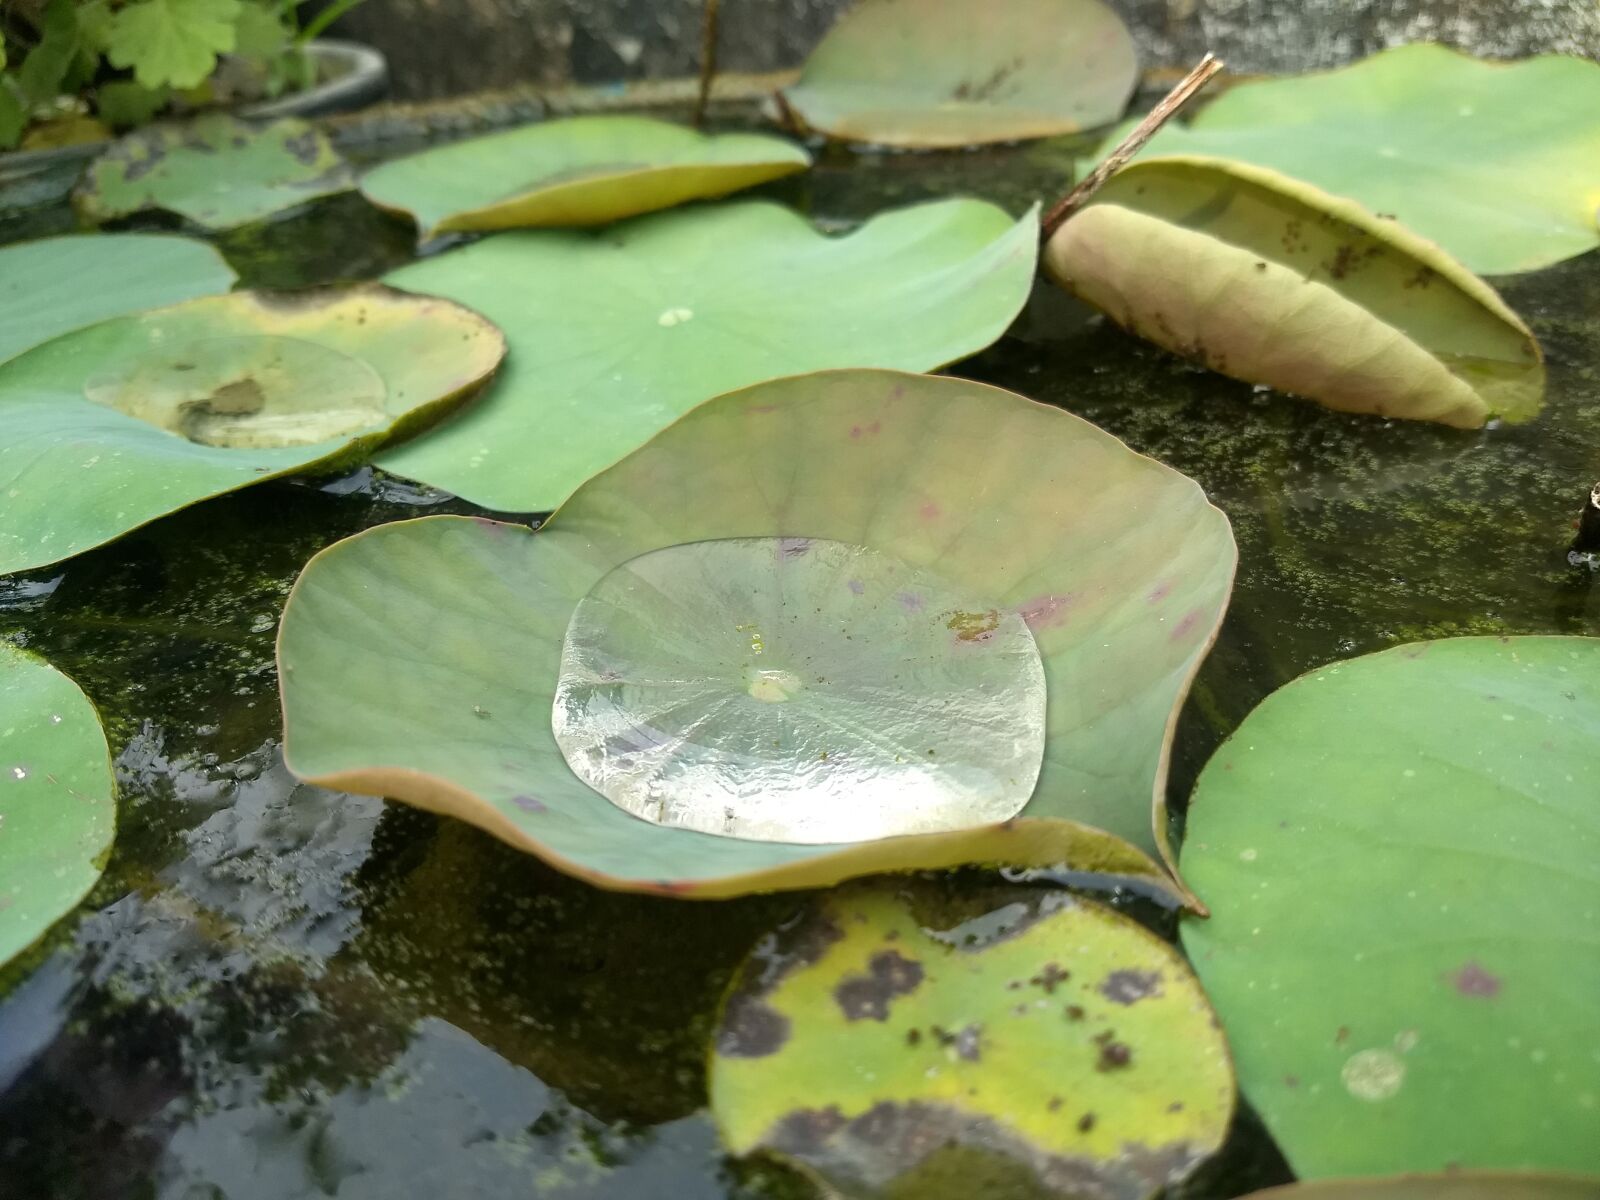 Motorola Moto G (5) Plus sample photo. Lotus, leaves, water photography